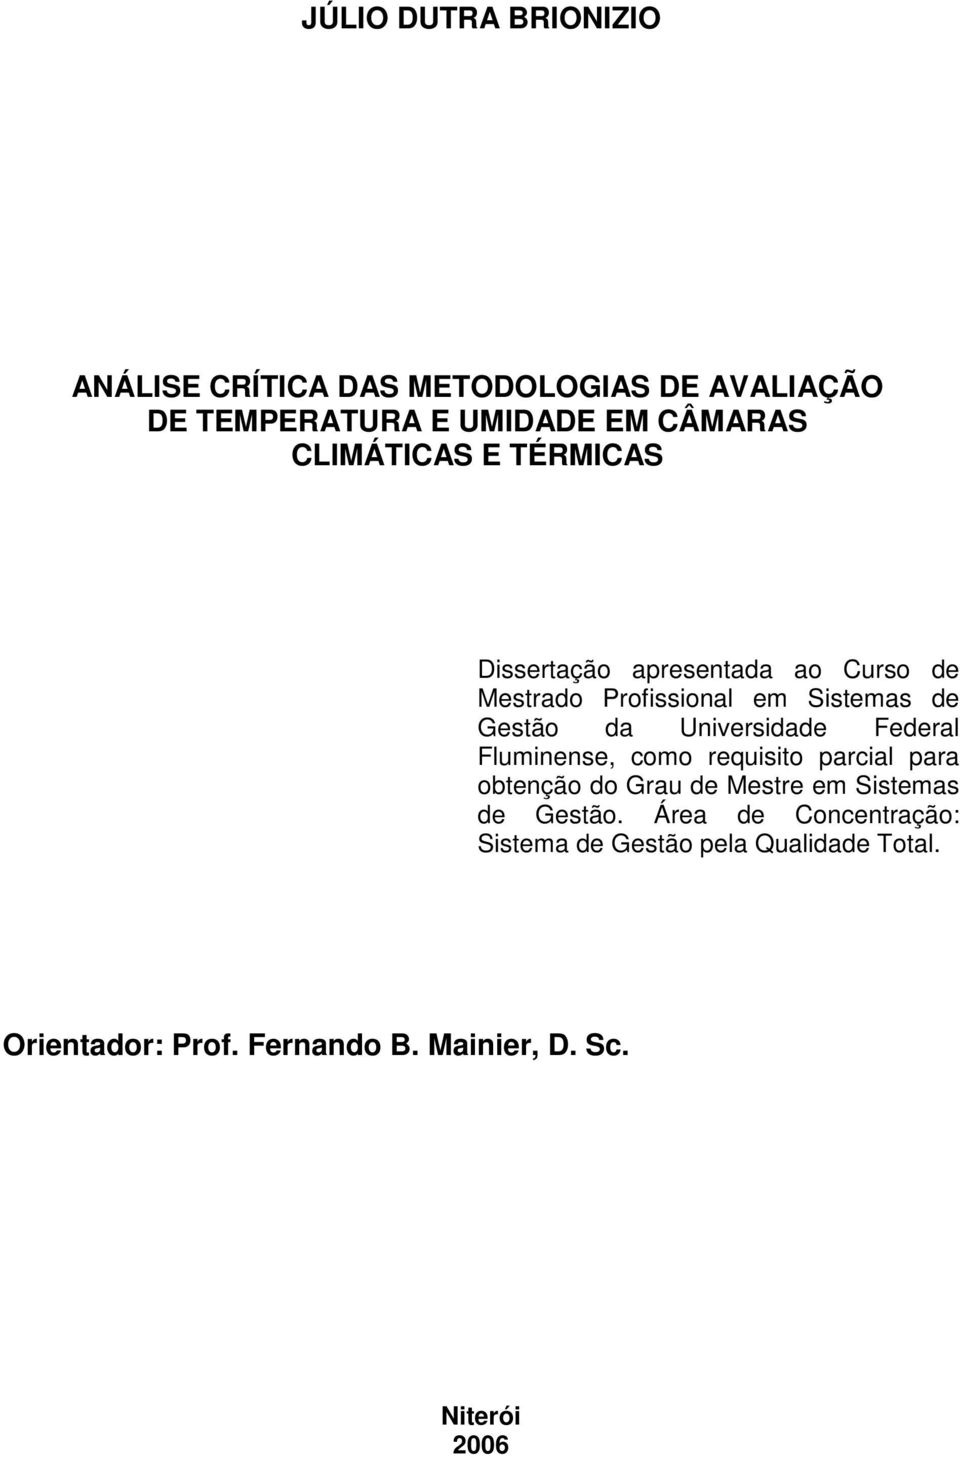 Universidade Federal Fluminense, como requisito parcial para obtenção do Grau de Mestre em Sistemas de Gestão.